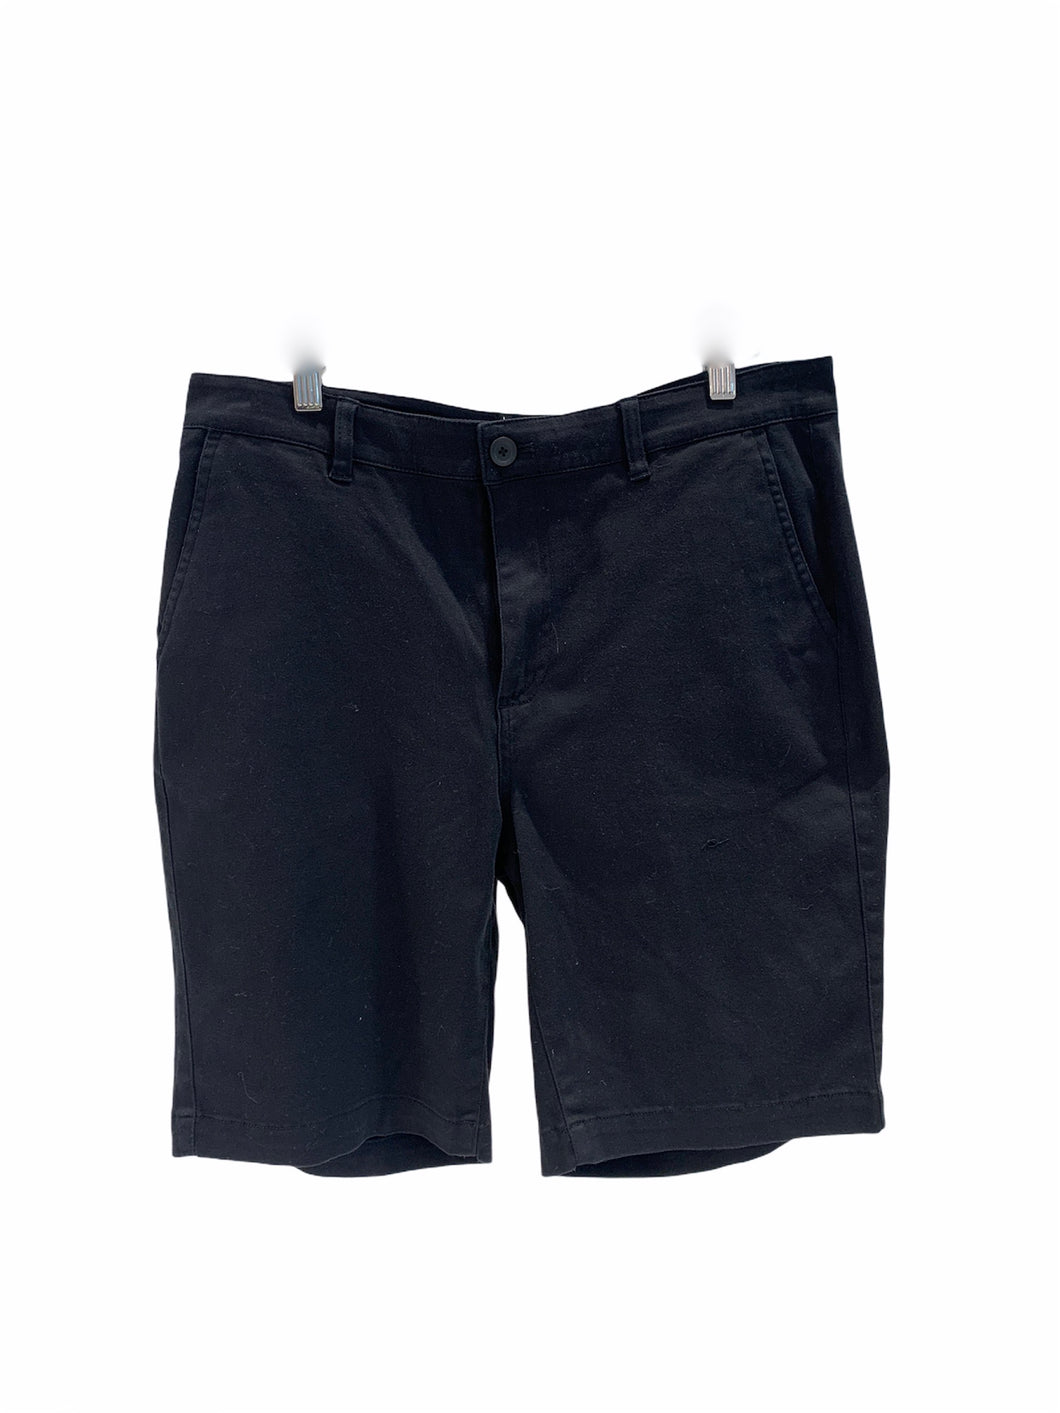 Men Bermuda Short Pant